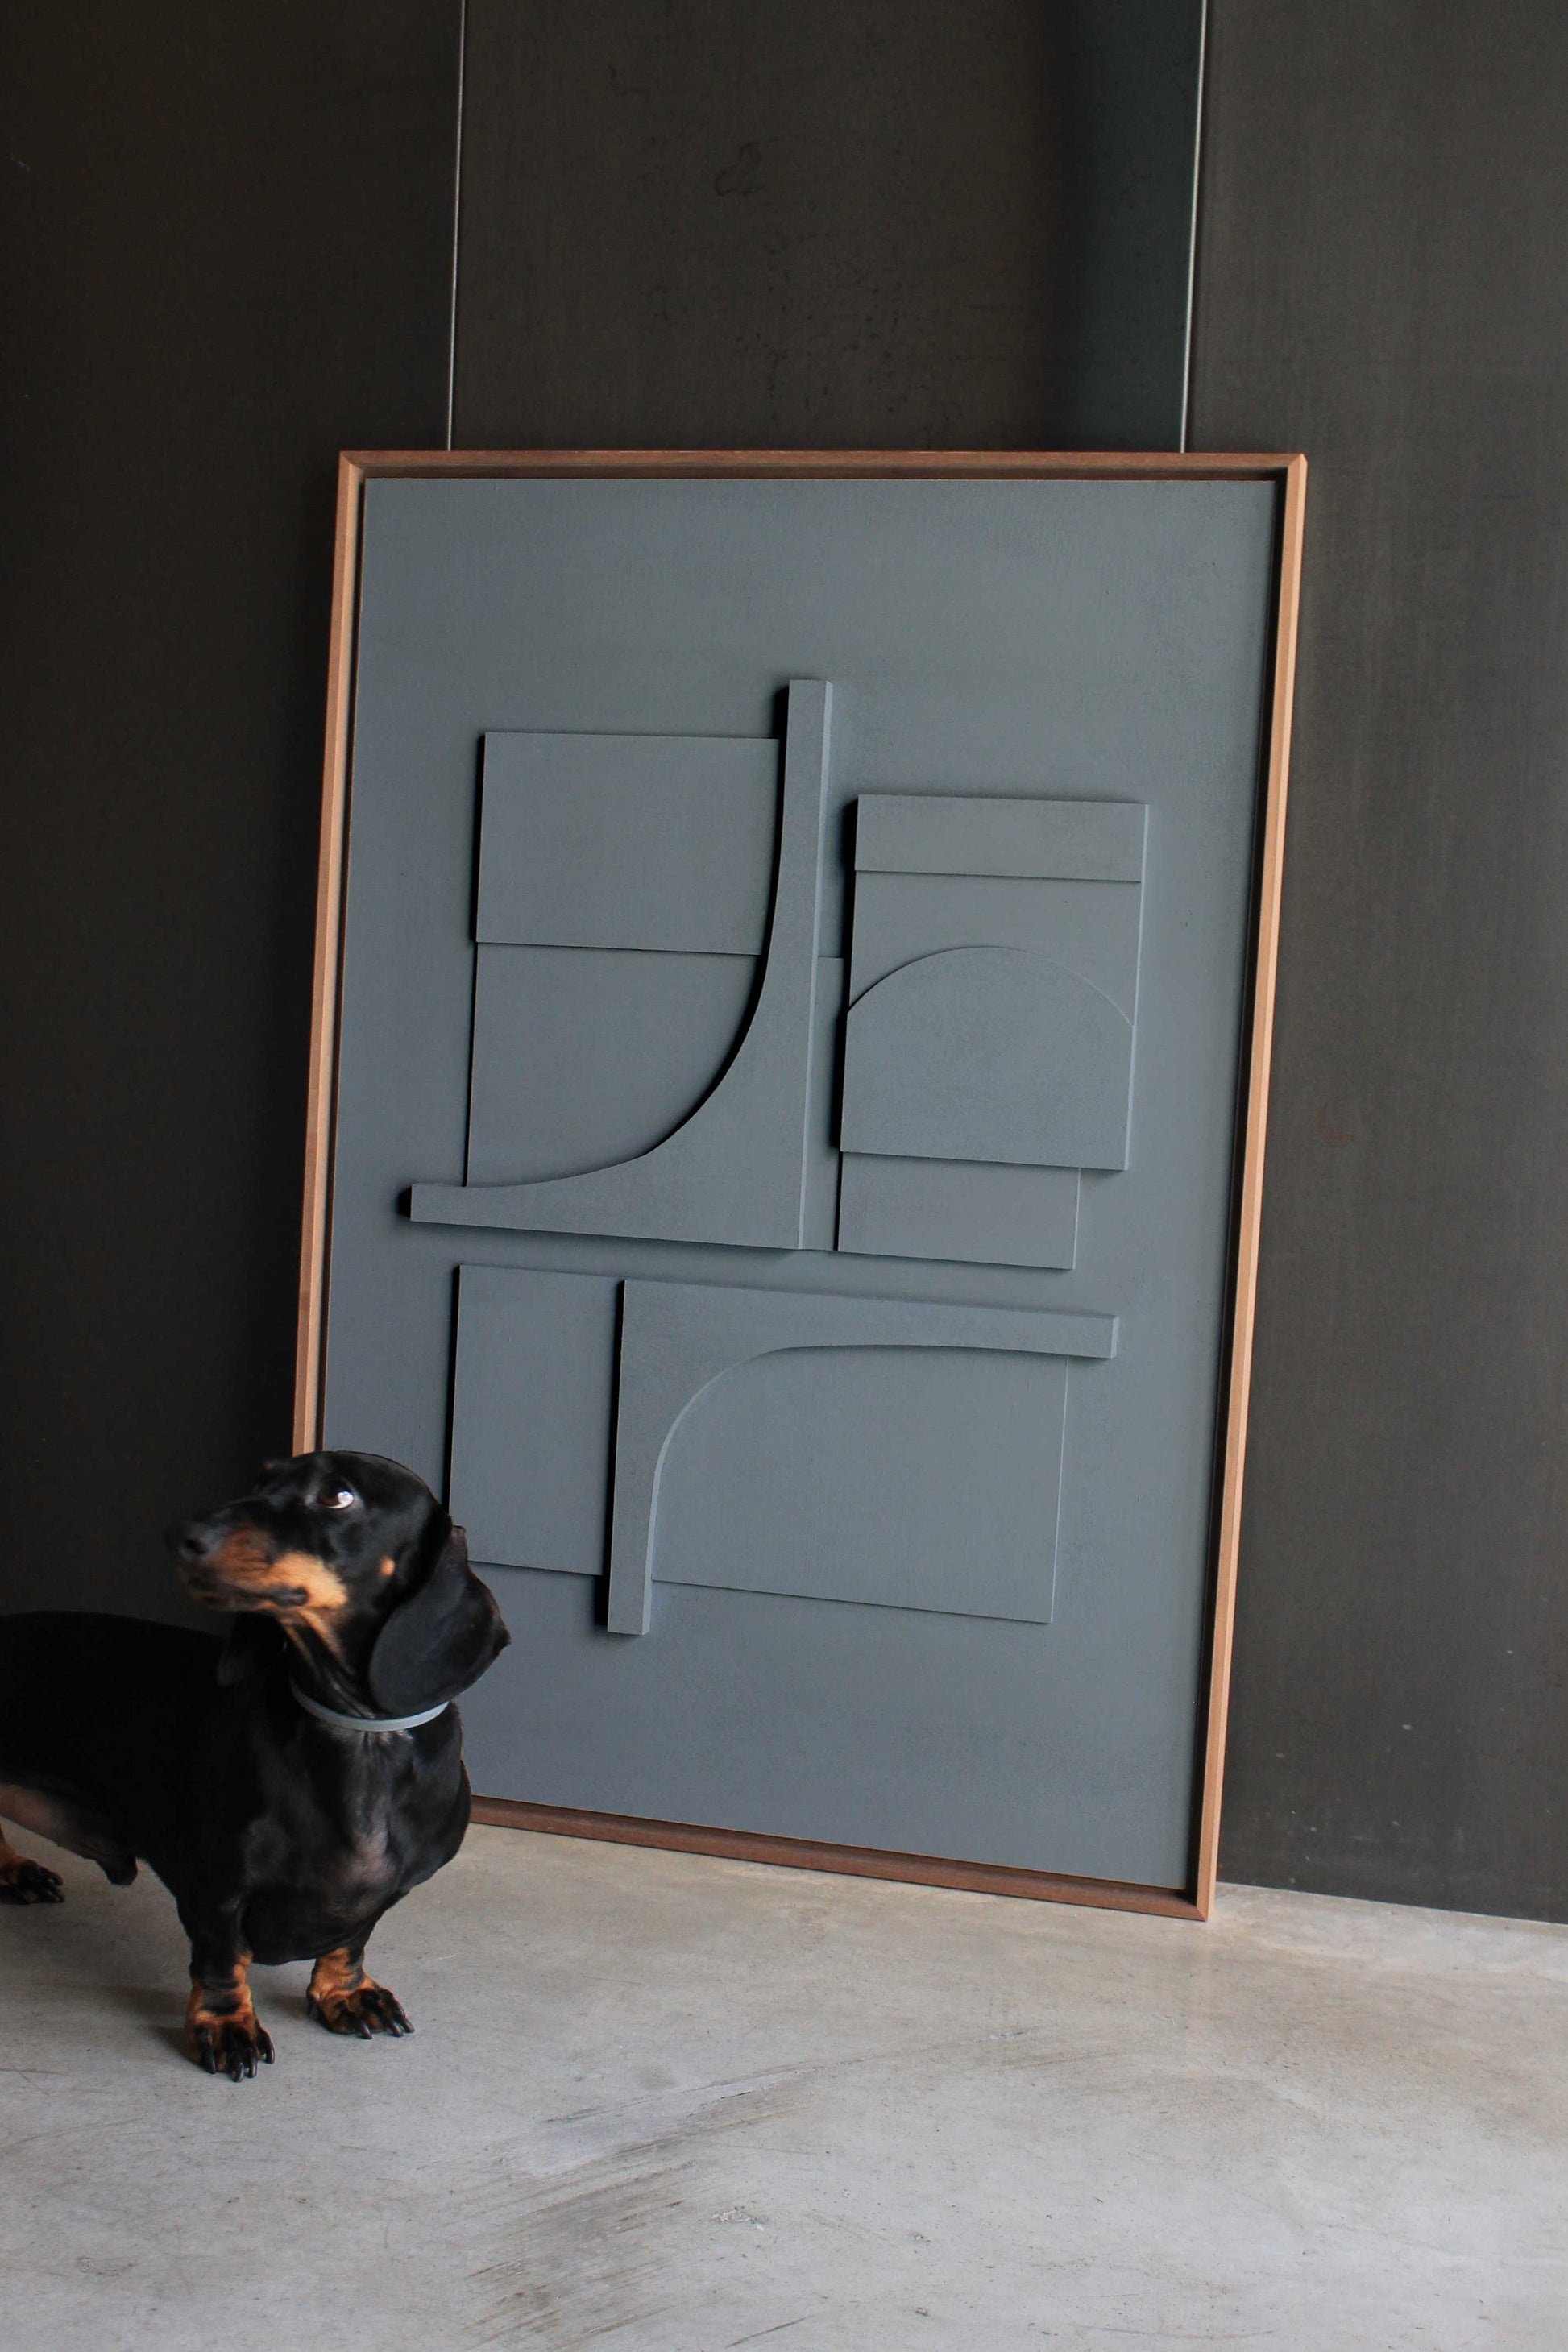 Arte contemporáneo por Teresa Darocas. Fotografía de la obra Carlo (en azul grisáceo) junto a un perro salchicha que ayuda a entender el tamaño del cuadro.